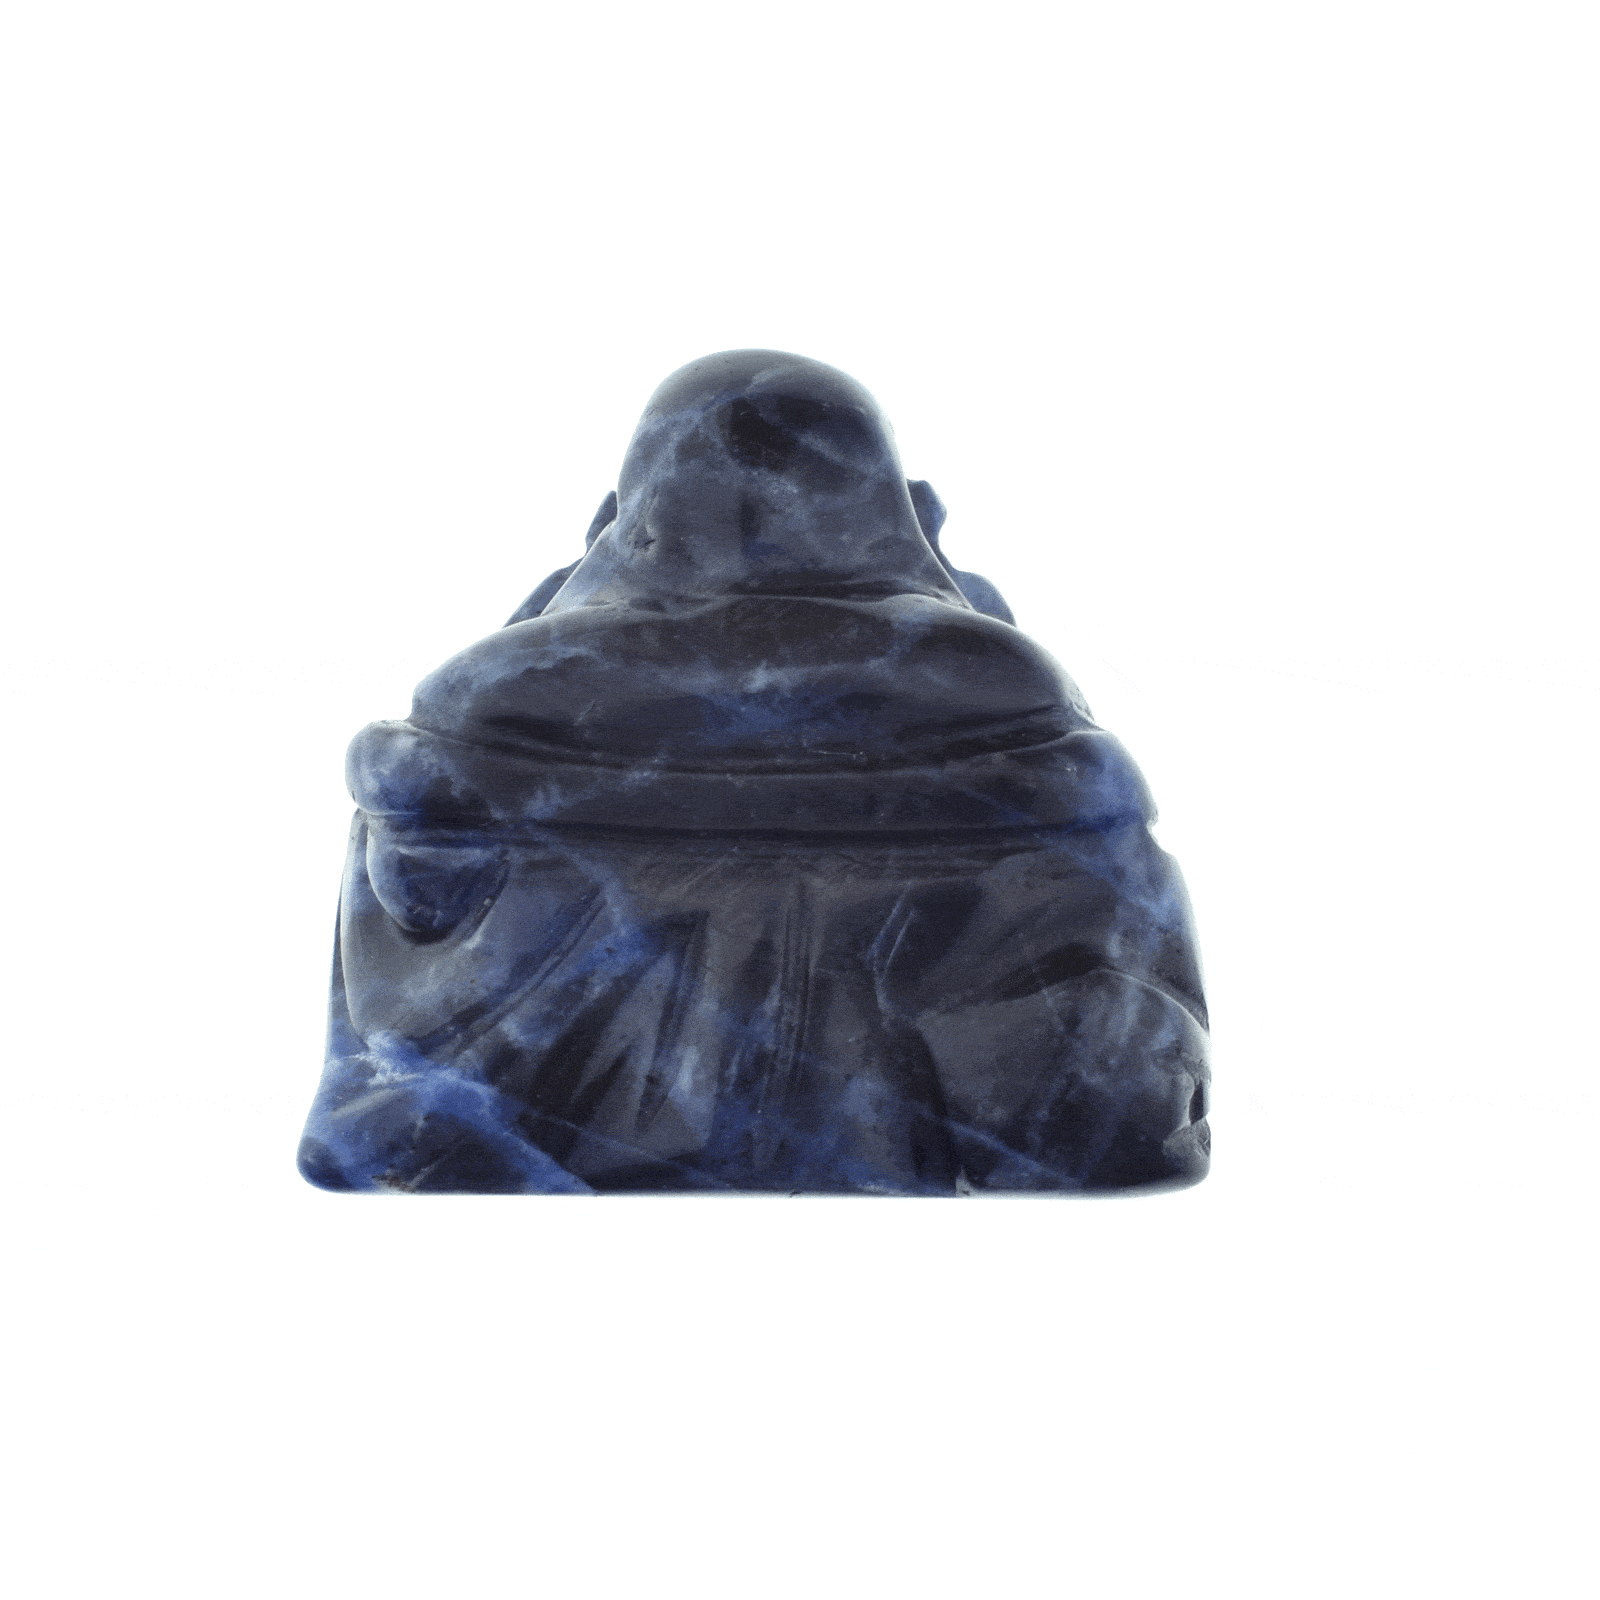 Φυσική πέτρα Σοδάλιθου σκαλισμένη στη μορφή Βούδα. Αγοράστε online shop.